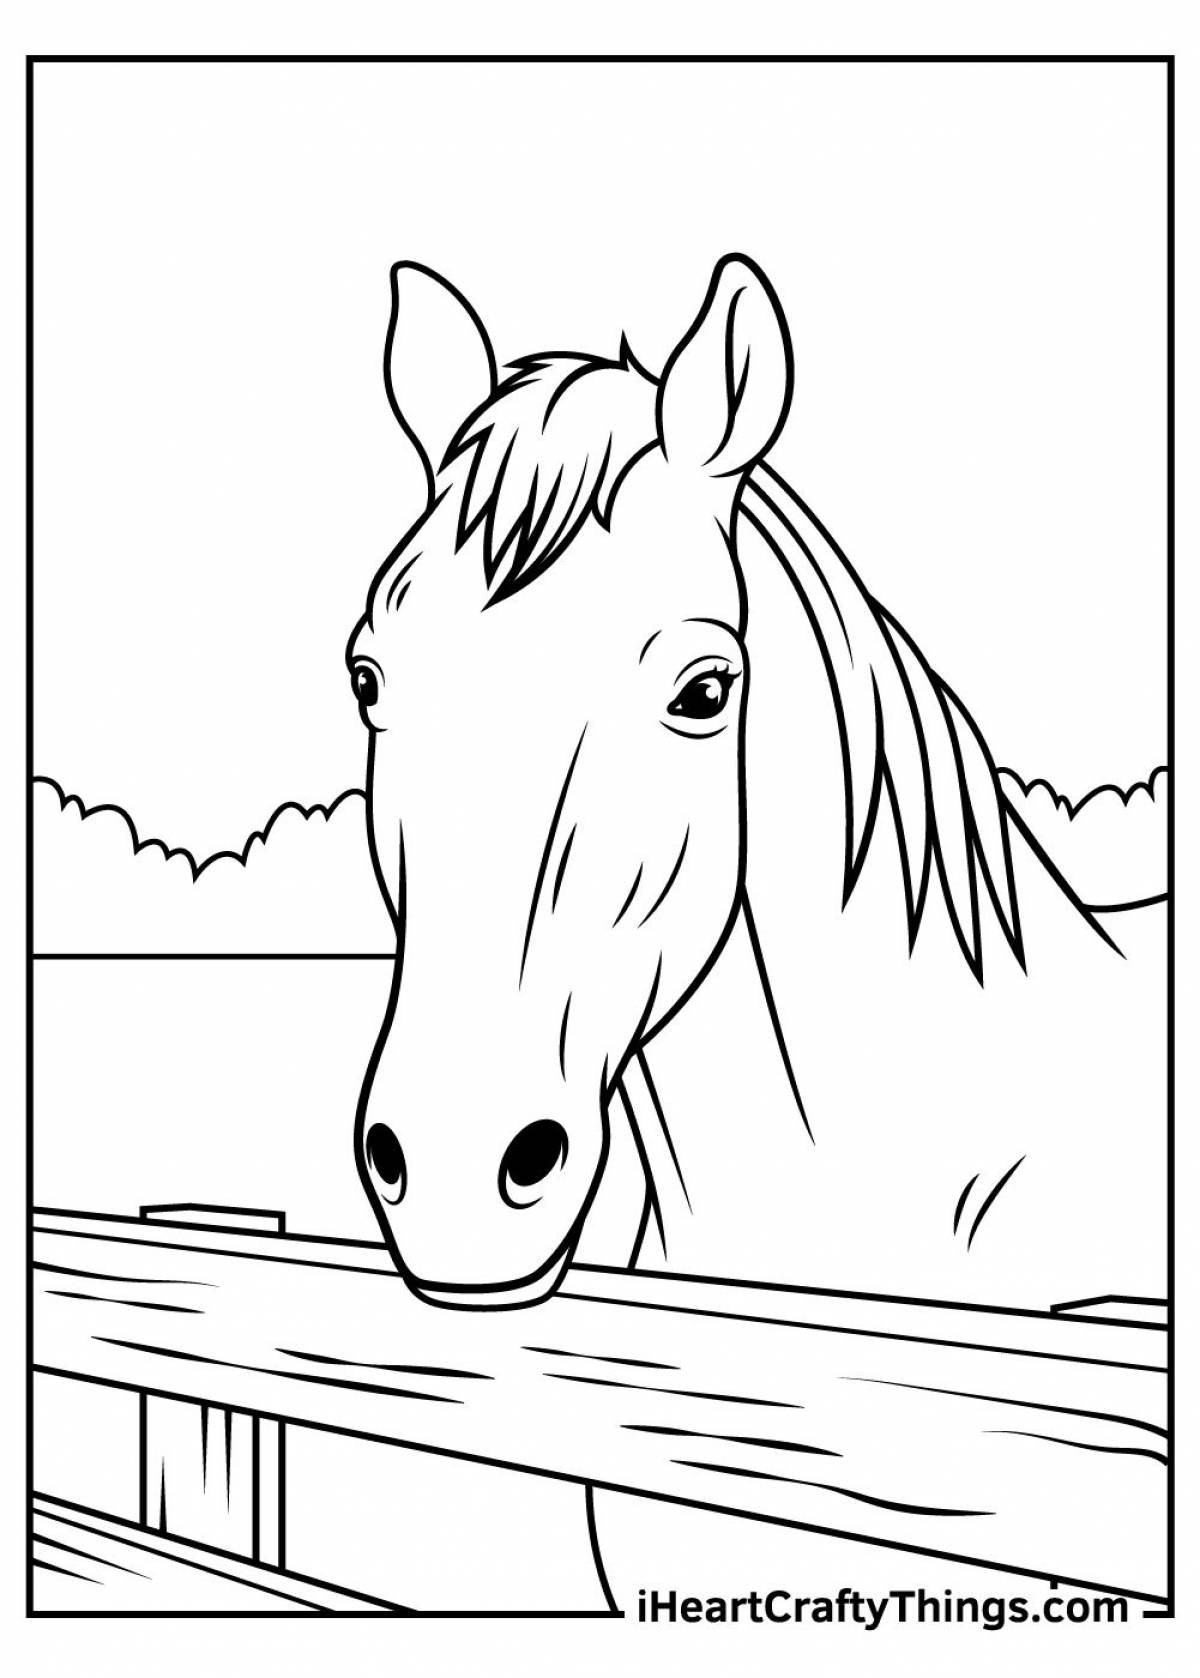 Magic coloring horse realistic